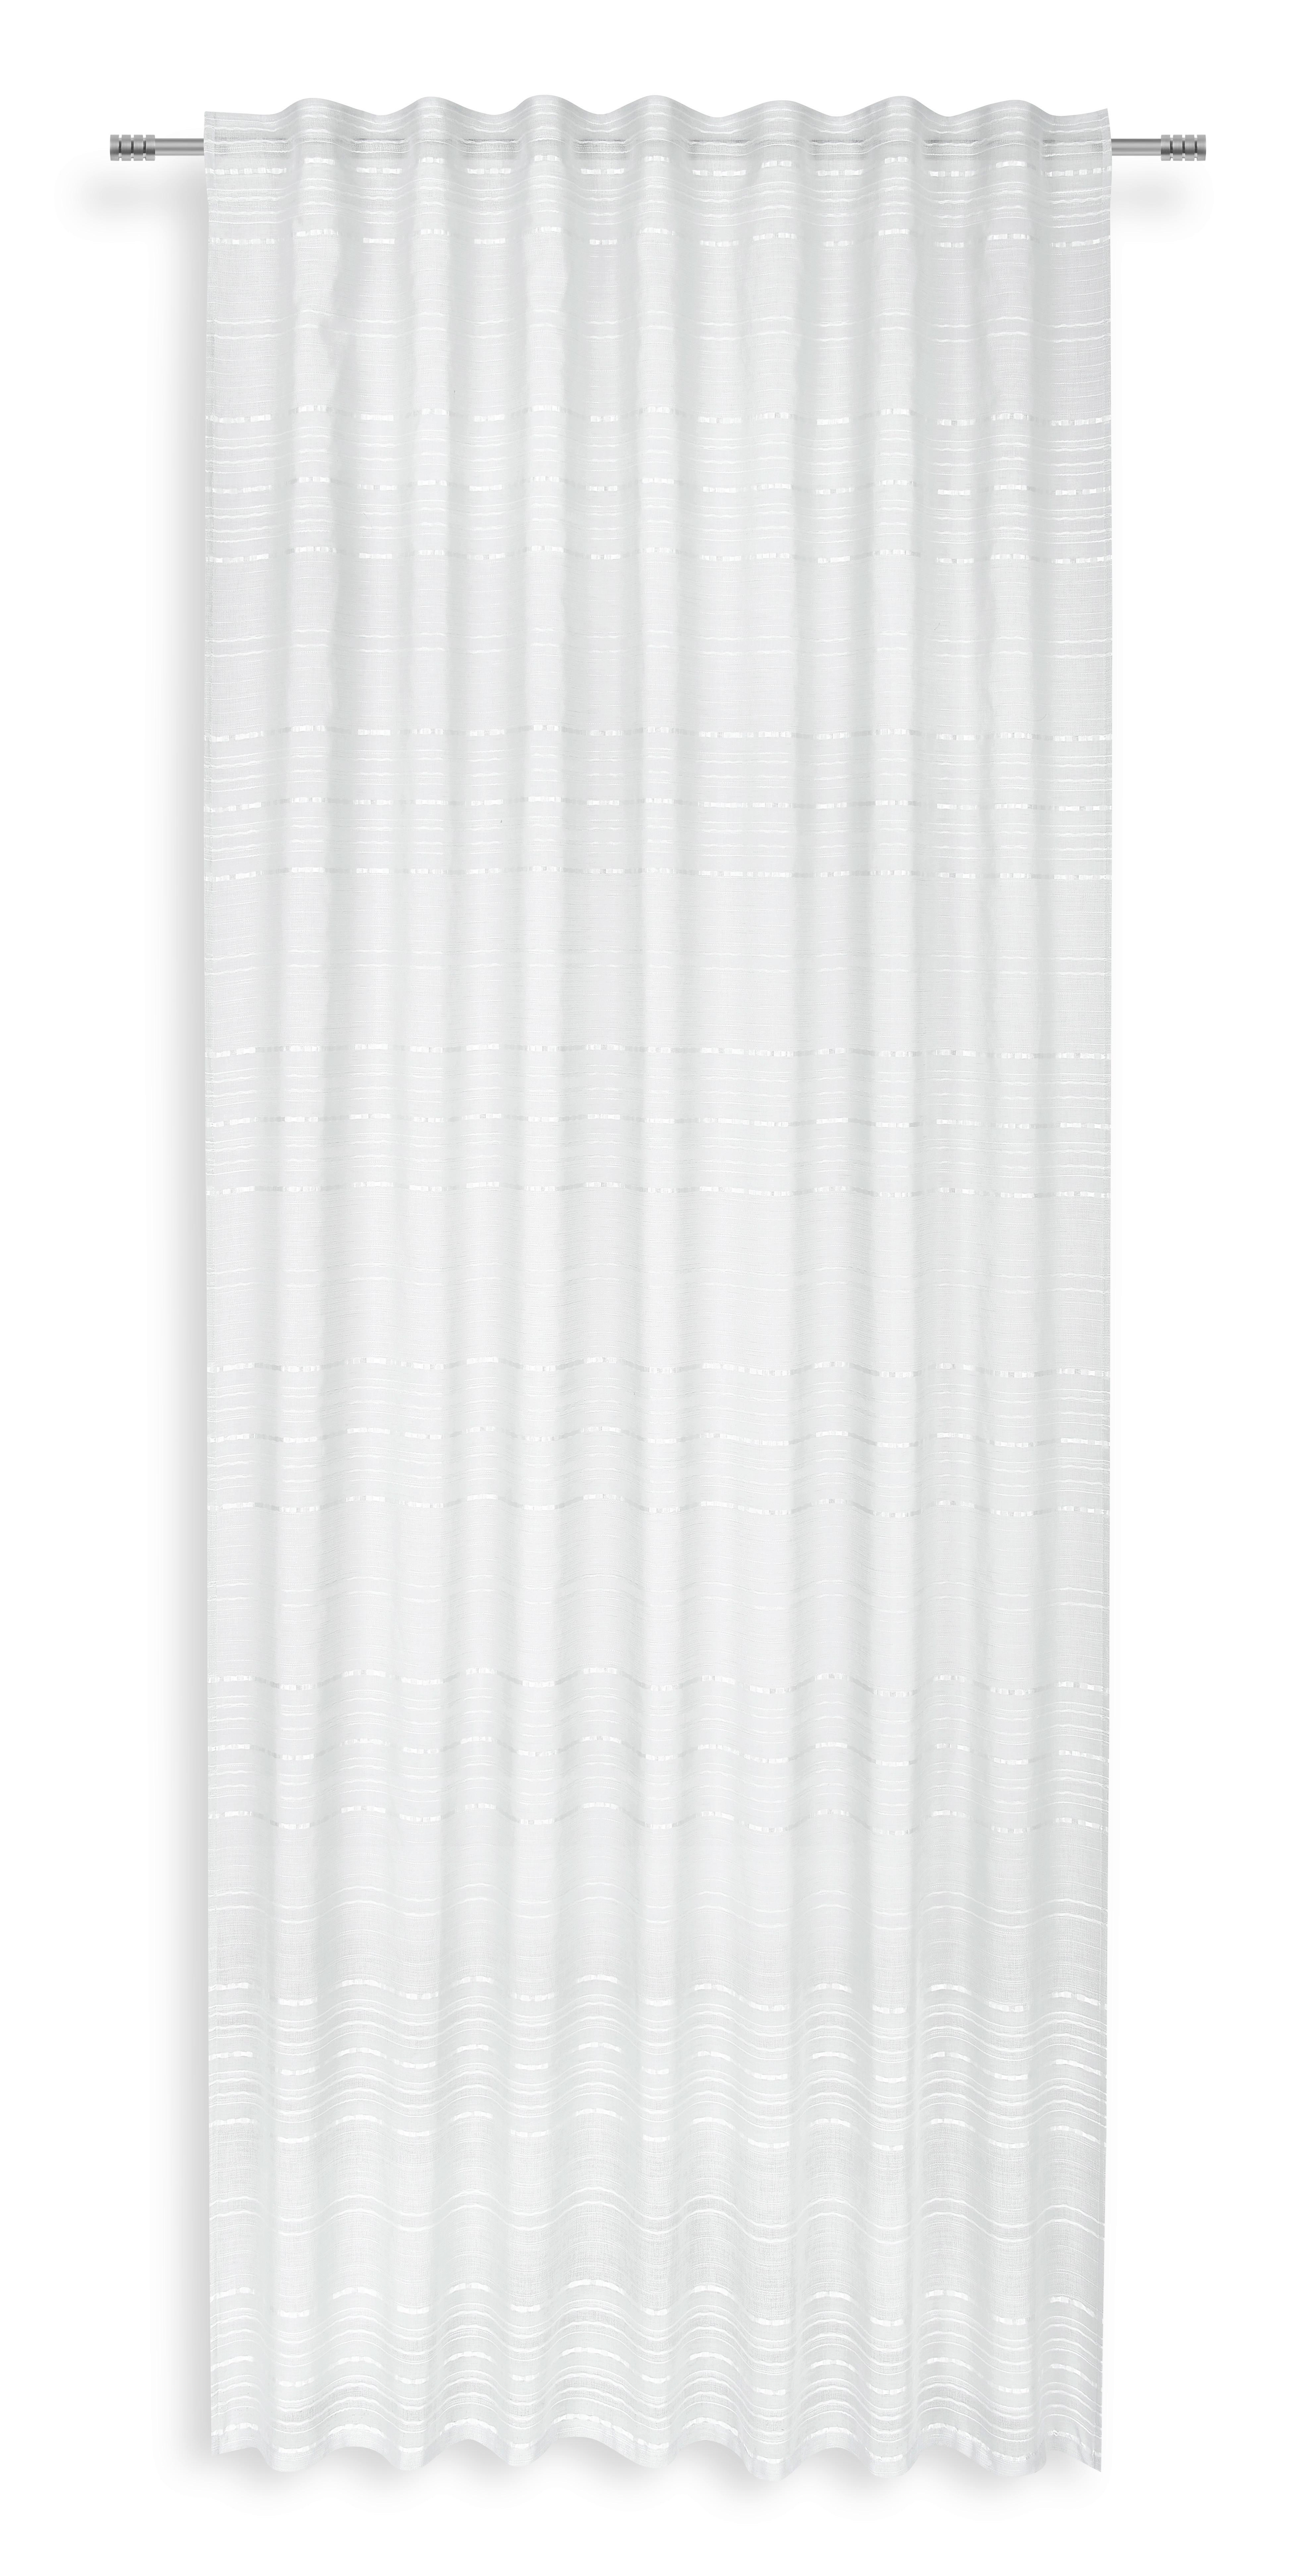 Készfüggöny Alina - Fehér, modern, Textil (140/245cm) - Luca Bessoni